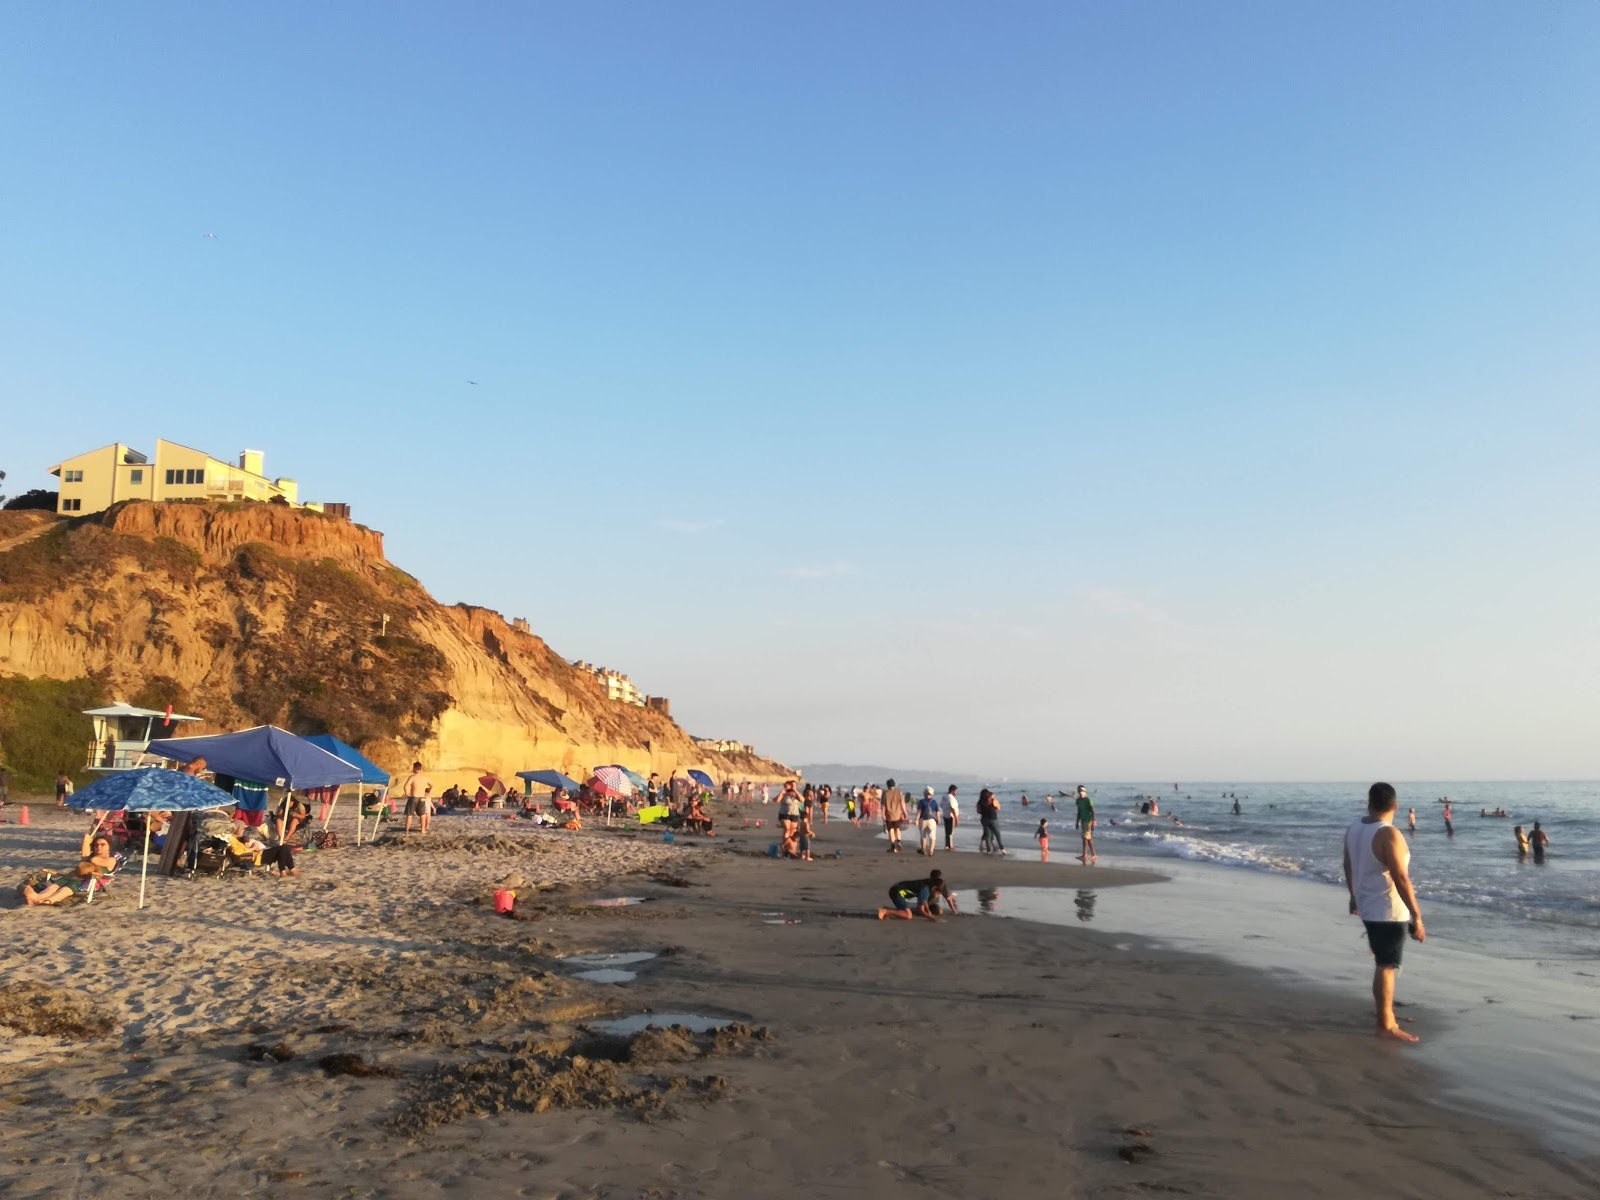 Solana beach'in fotoğrafı - rahatlamayı sevenler arasında popüler bir yer